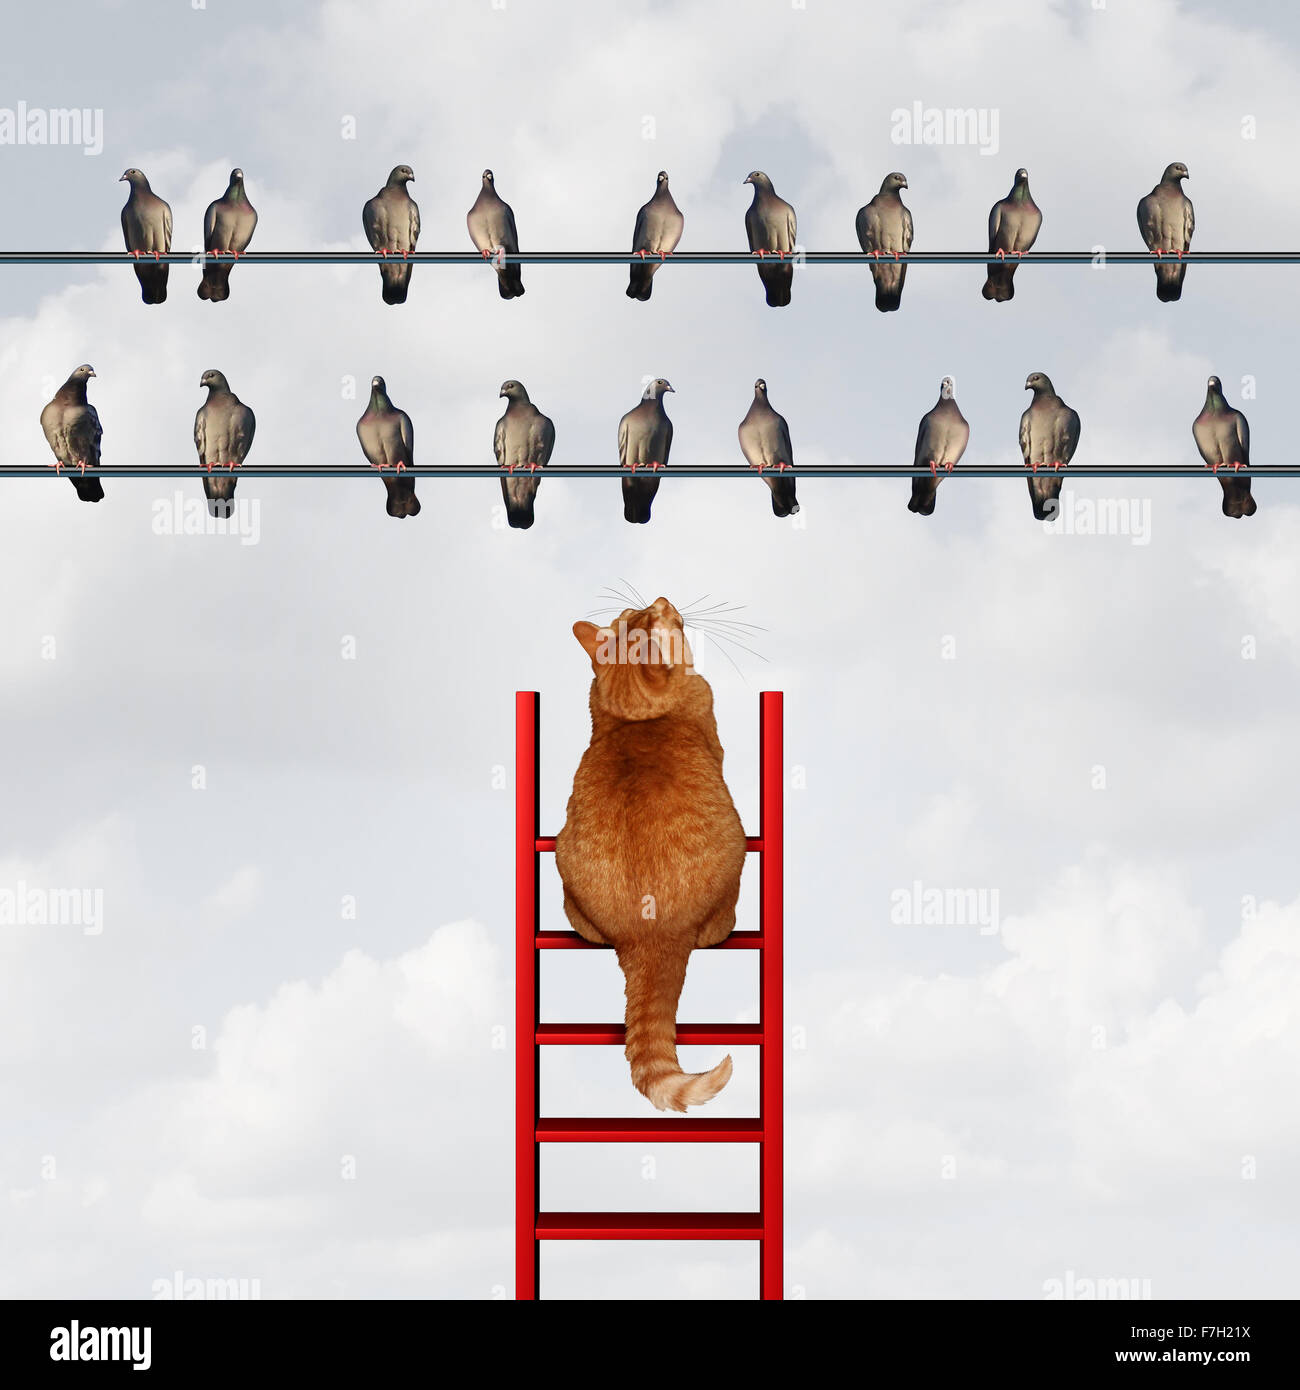 Erreichen Ihr Ziel-Konzept und Einstellung Ziele Geschäft Metapher, wie eine Katze, die einen Aufstieg um eine Gruppe der Vögel auf dem Hochseil als Motivation Symbol für Strategie und Planung zu erreichen. Stockfoto